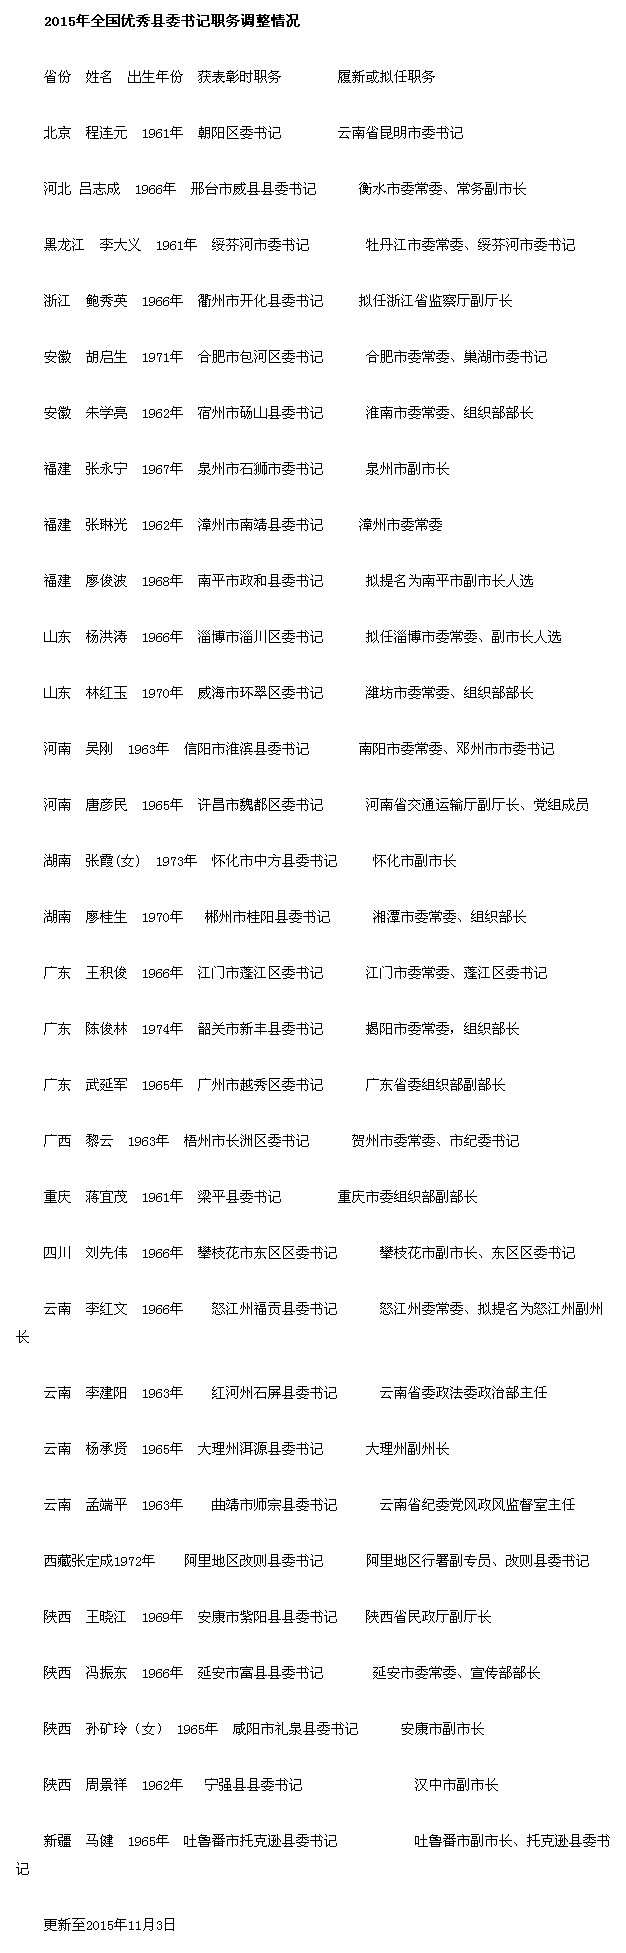 27名全国优秀县委书记履新 湖南2名70后被提拔